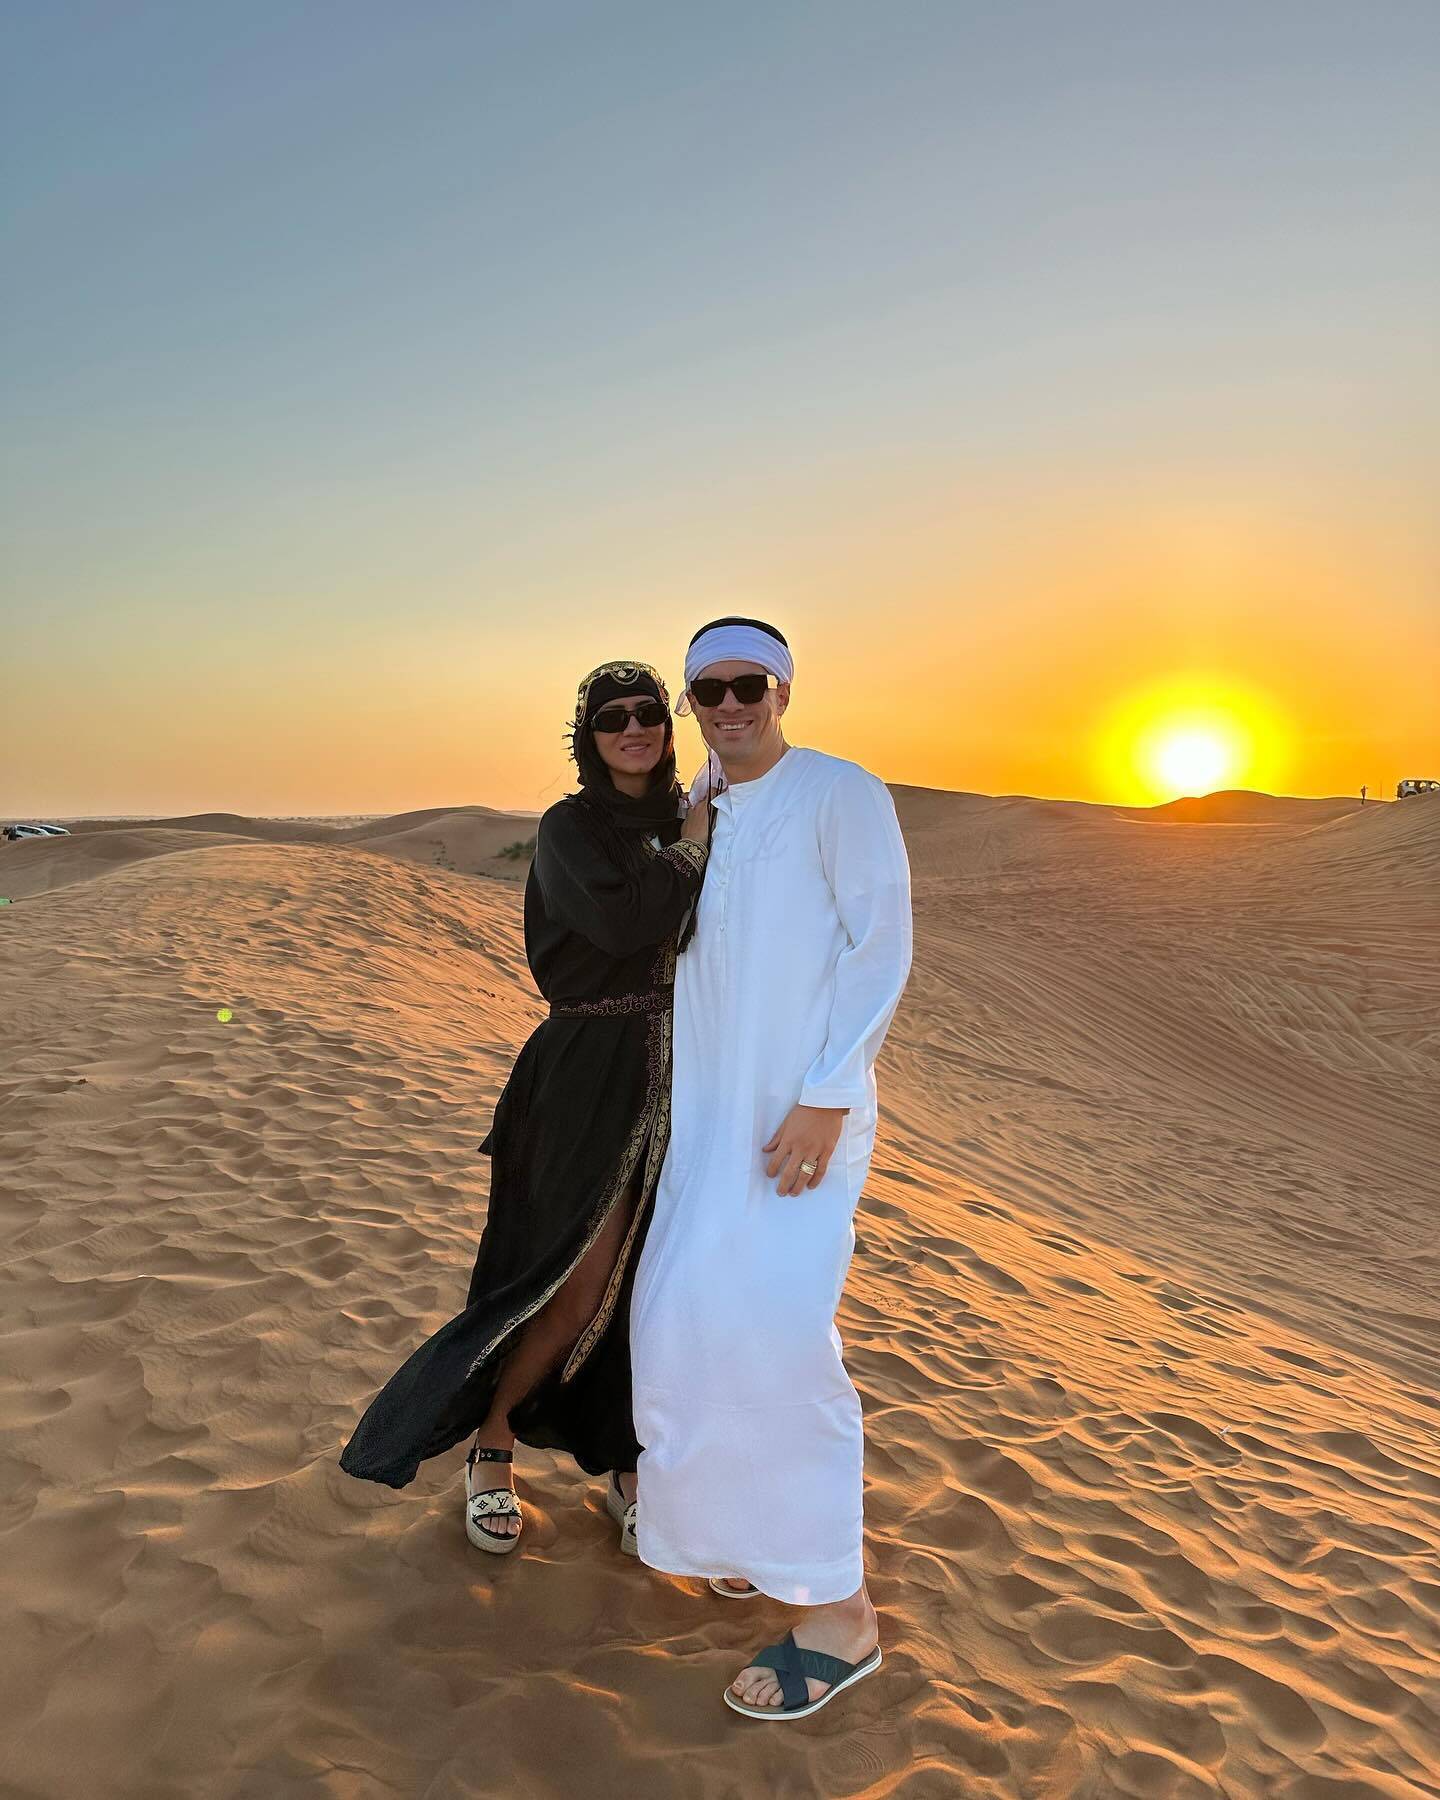 享受生活！莫伊塞斯与家人迪拜度假 穿阿拉伯服饰玩鹰(图)